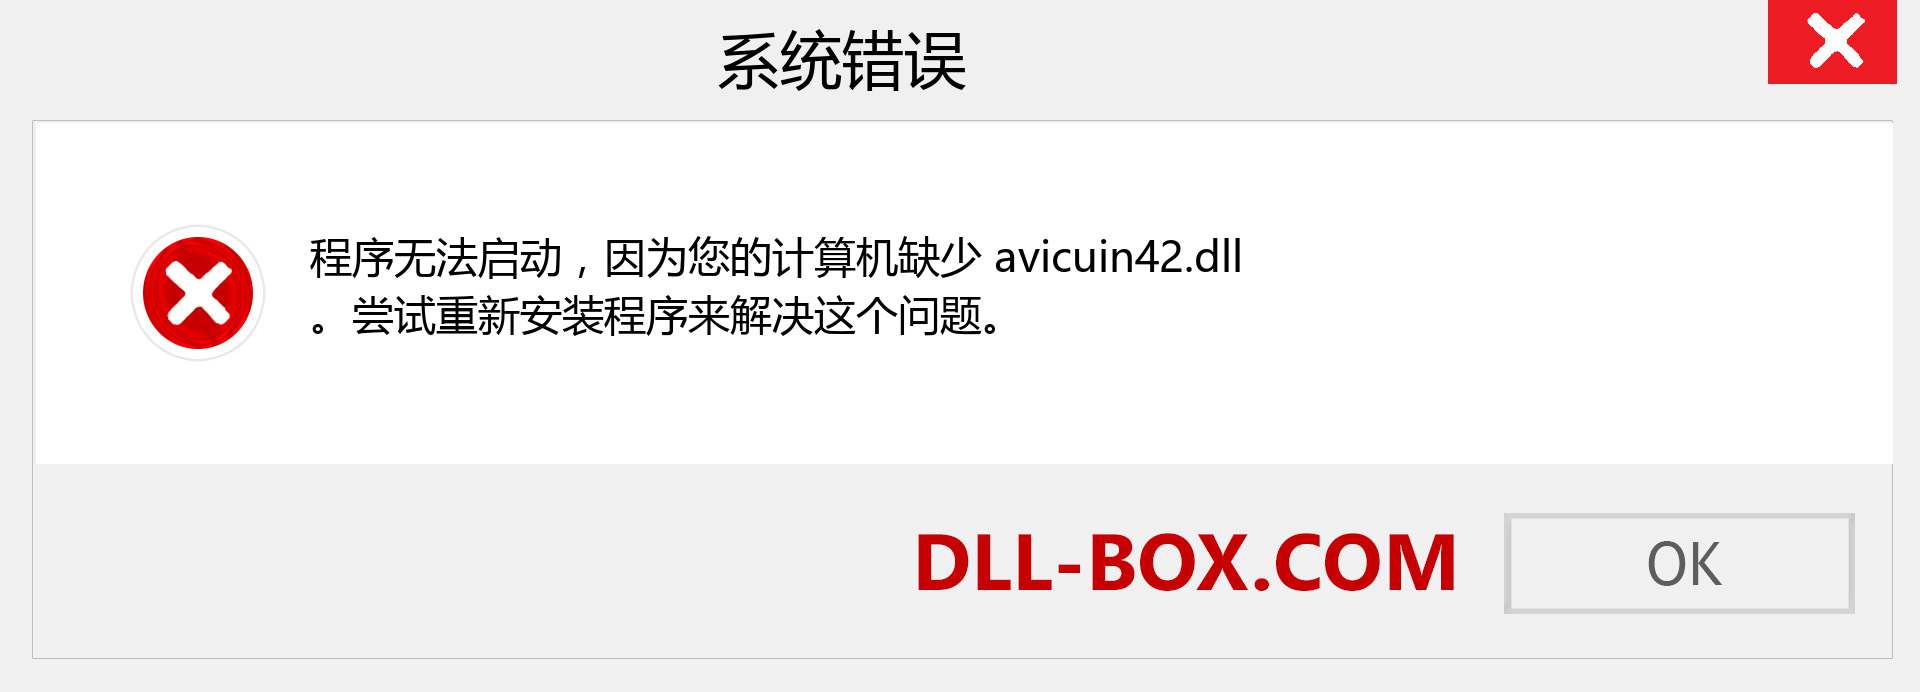 avicuin42.dll 文件丢失？。 适用于 Windows 7、8、10 的下载 - 修复 Windows、照片、图像上的 avicuin42 dll 丢失错误